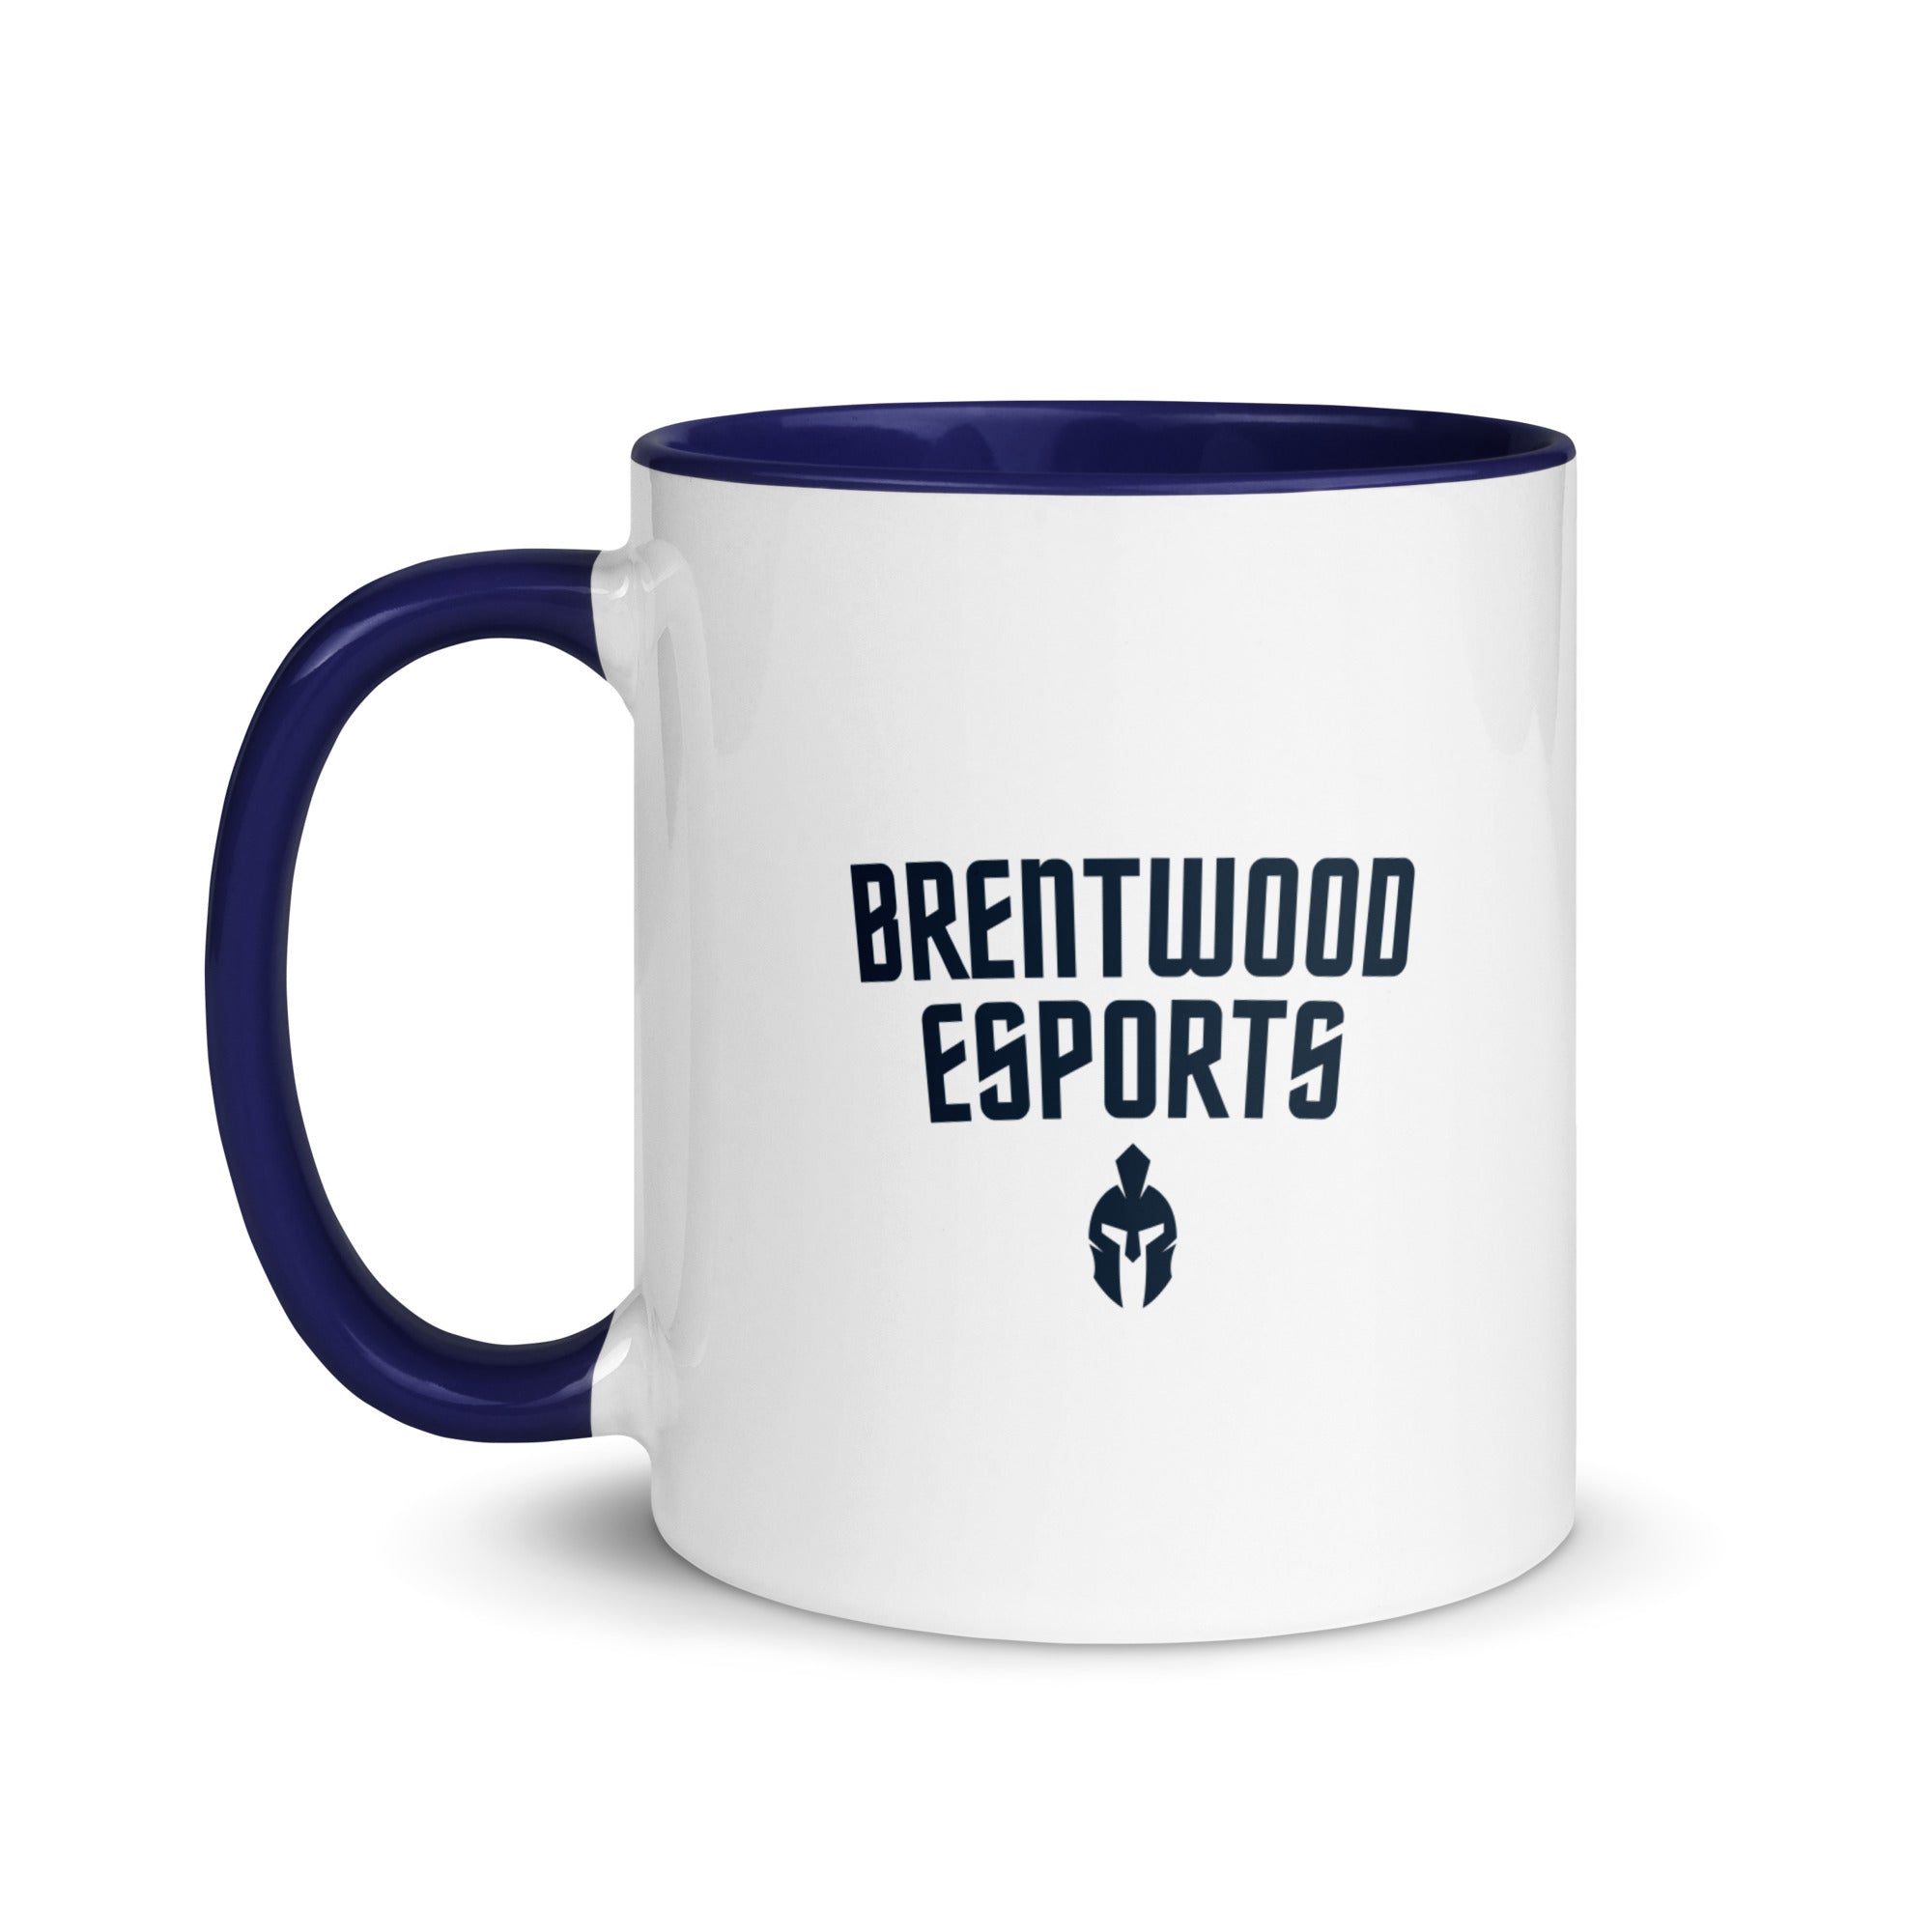 Brentwood Esports Coffee Mug